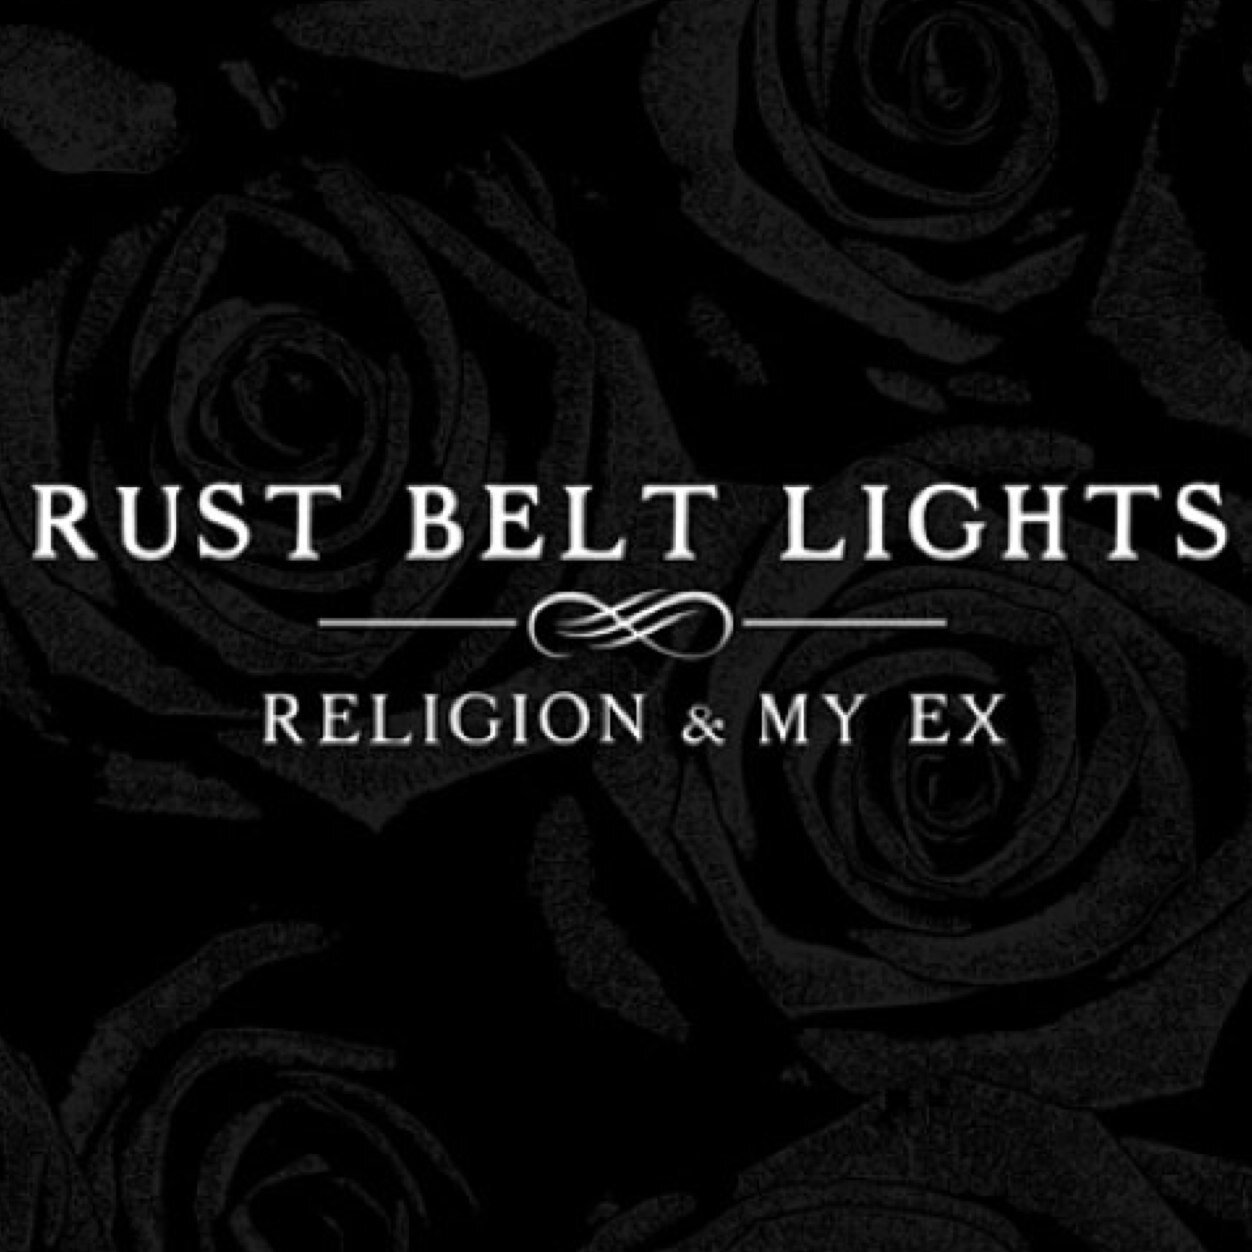 Rust Belt Lights